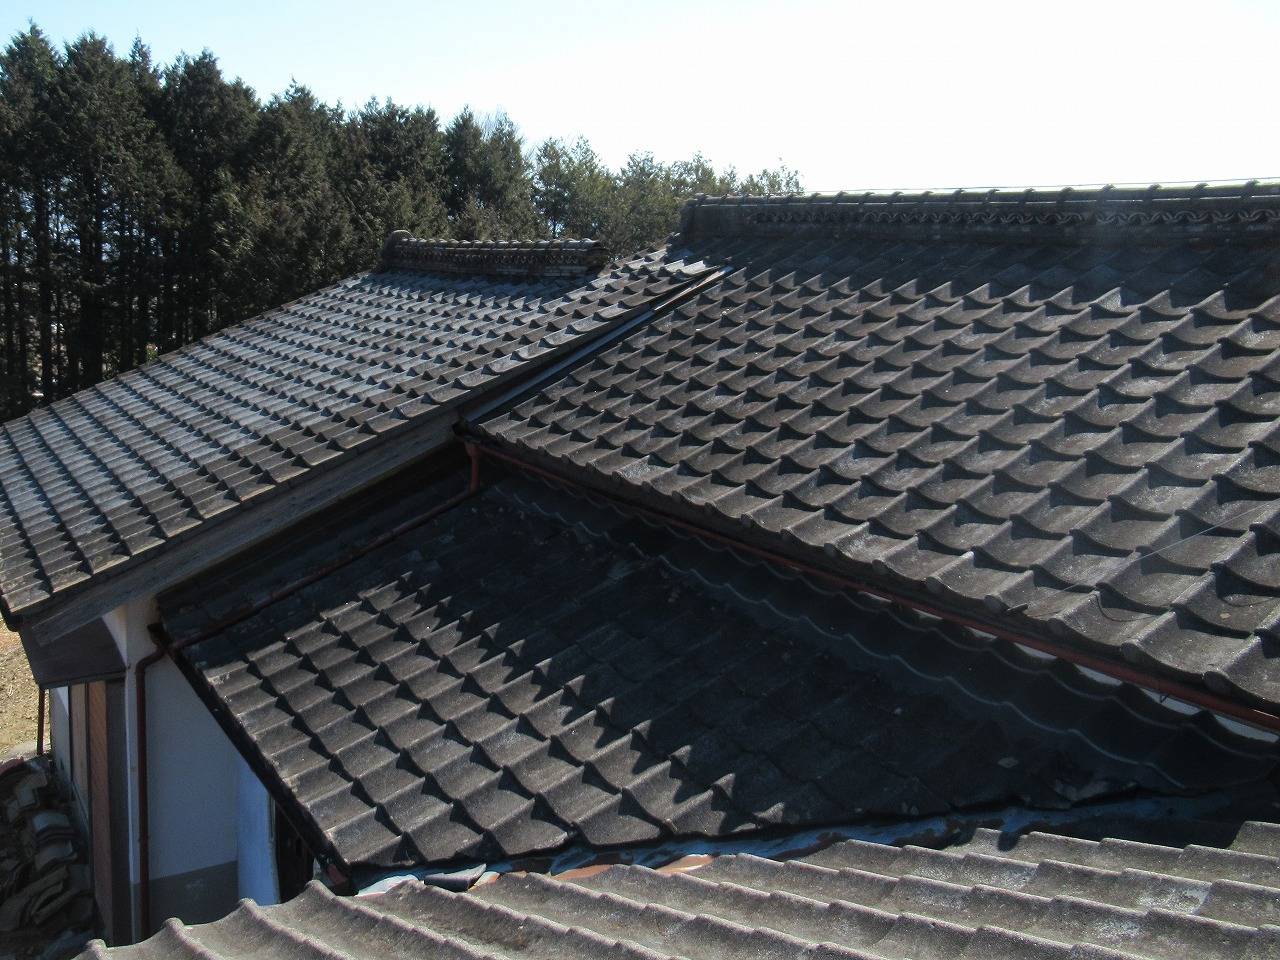 韮崎市で瓦屋根からガルバリウム鋼板屋根に葺き替え工事をしました